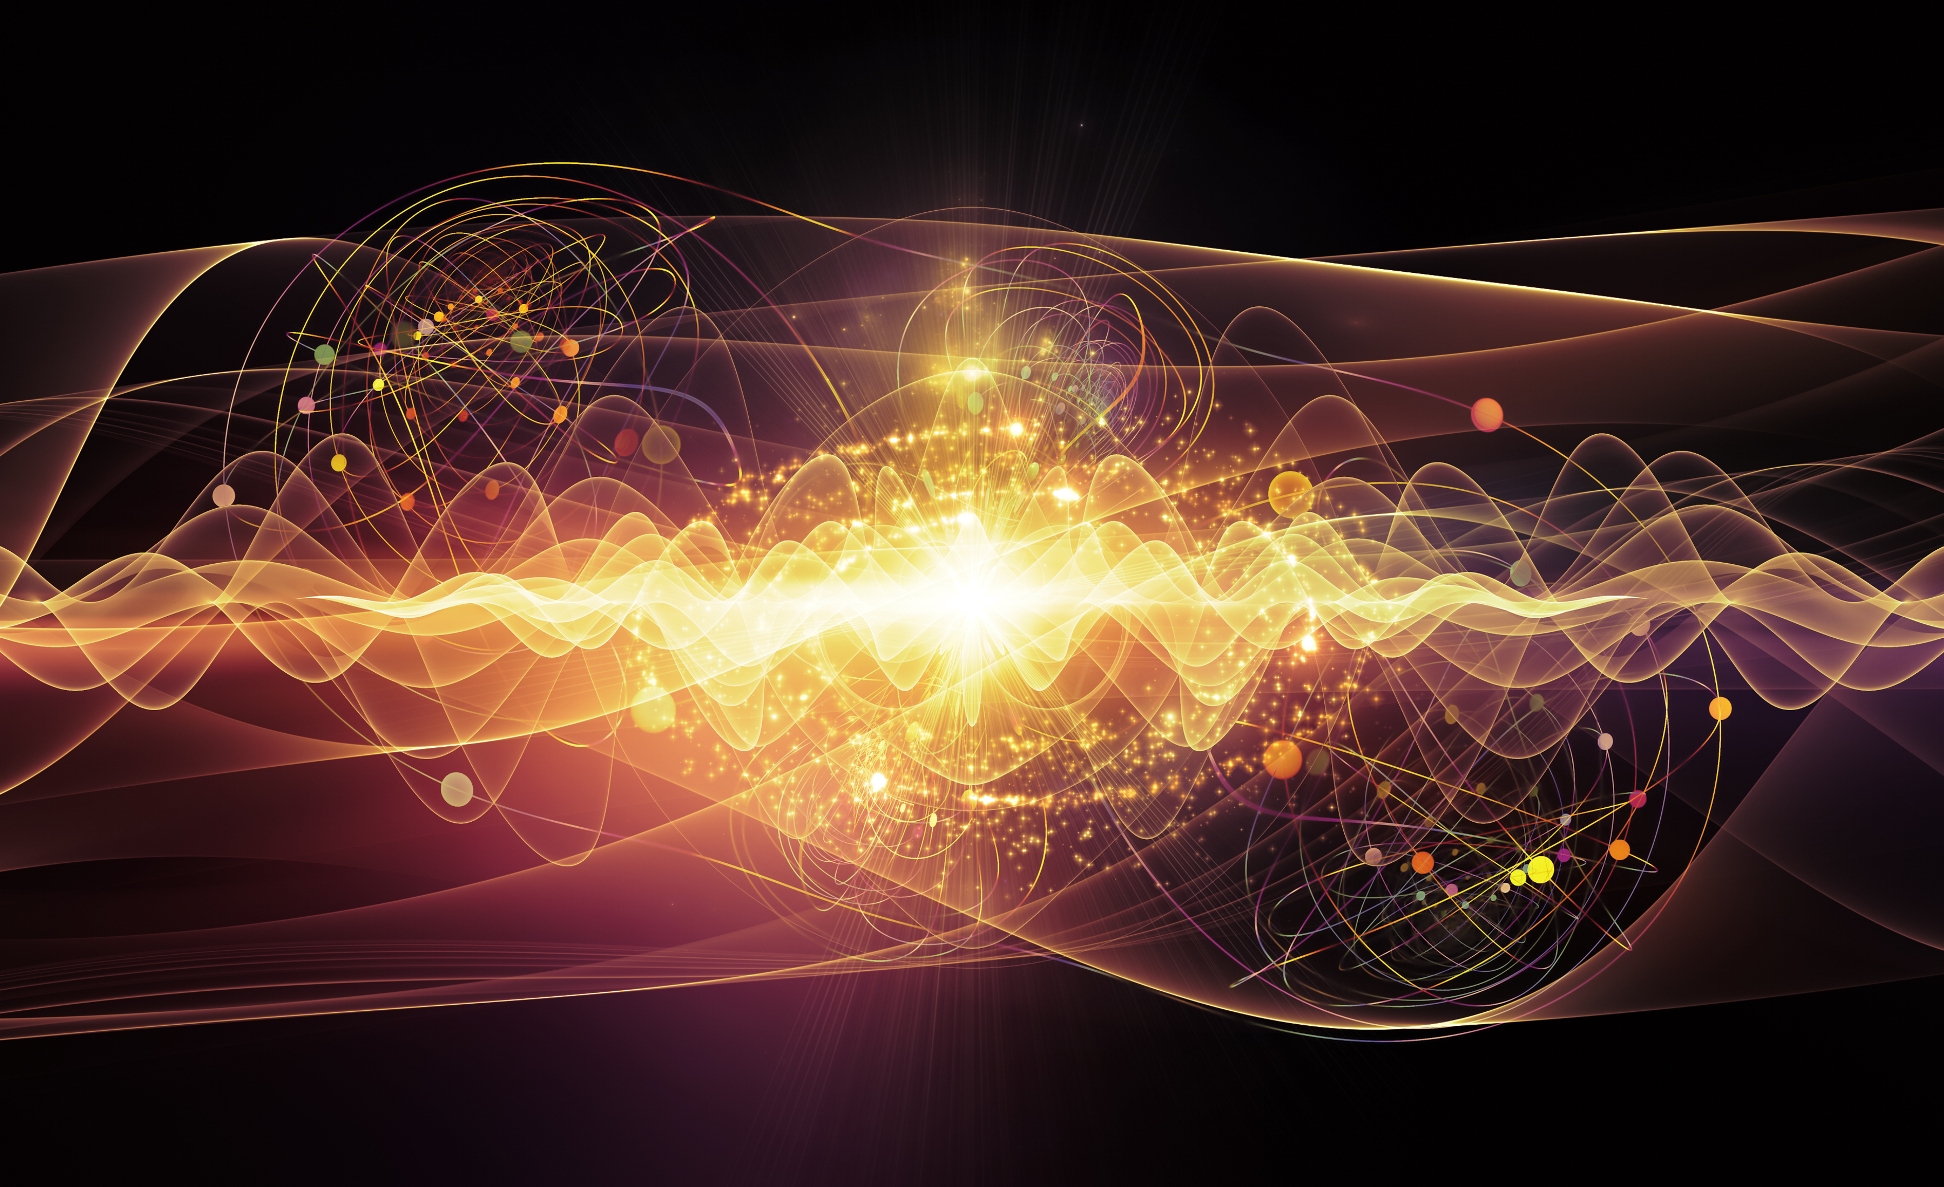 Une vue d'artiste de l'étonnant monde quantique. © agsandrew, Shutterstock